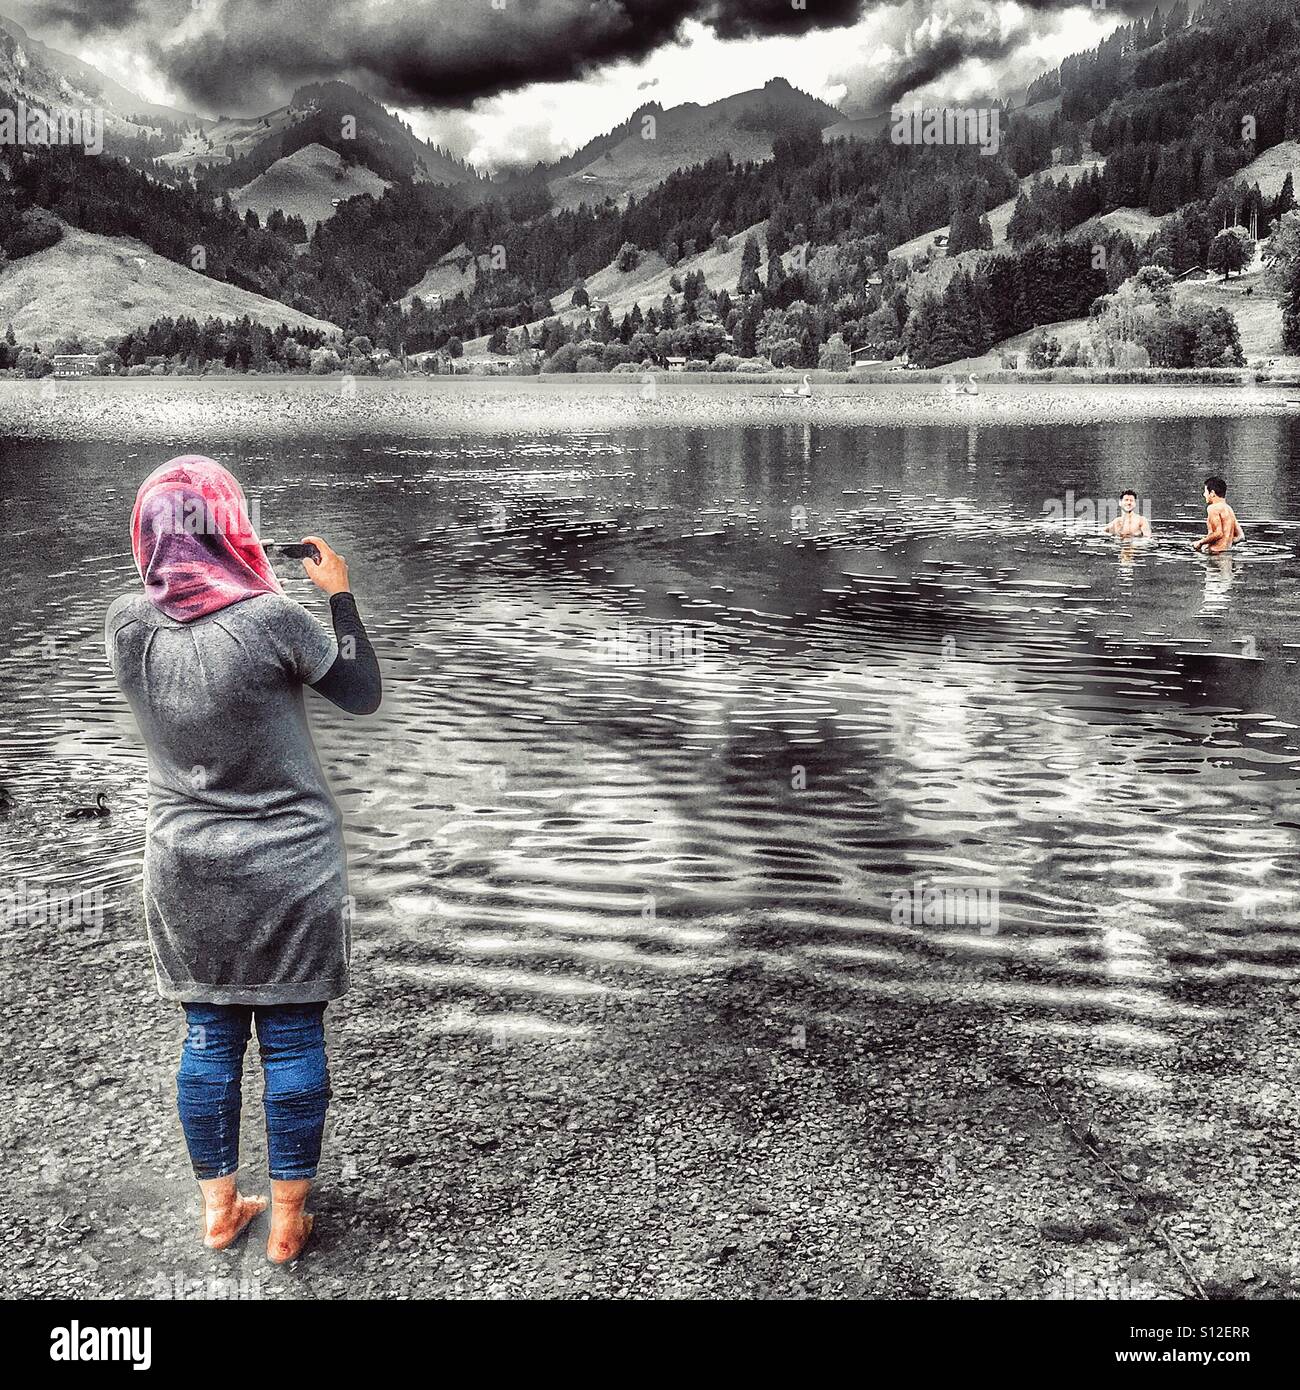 Die muslimische Frau im Kopftuch nimmt Foto ihrer Brüder in einem See  schwimmen Stockfotografie - Alamy